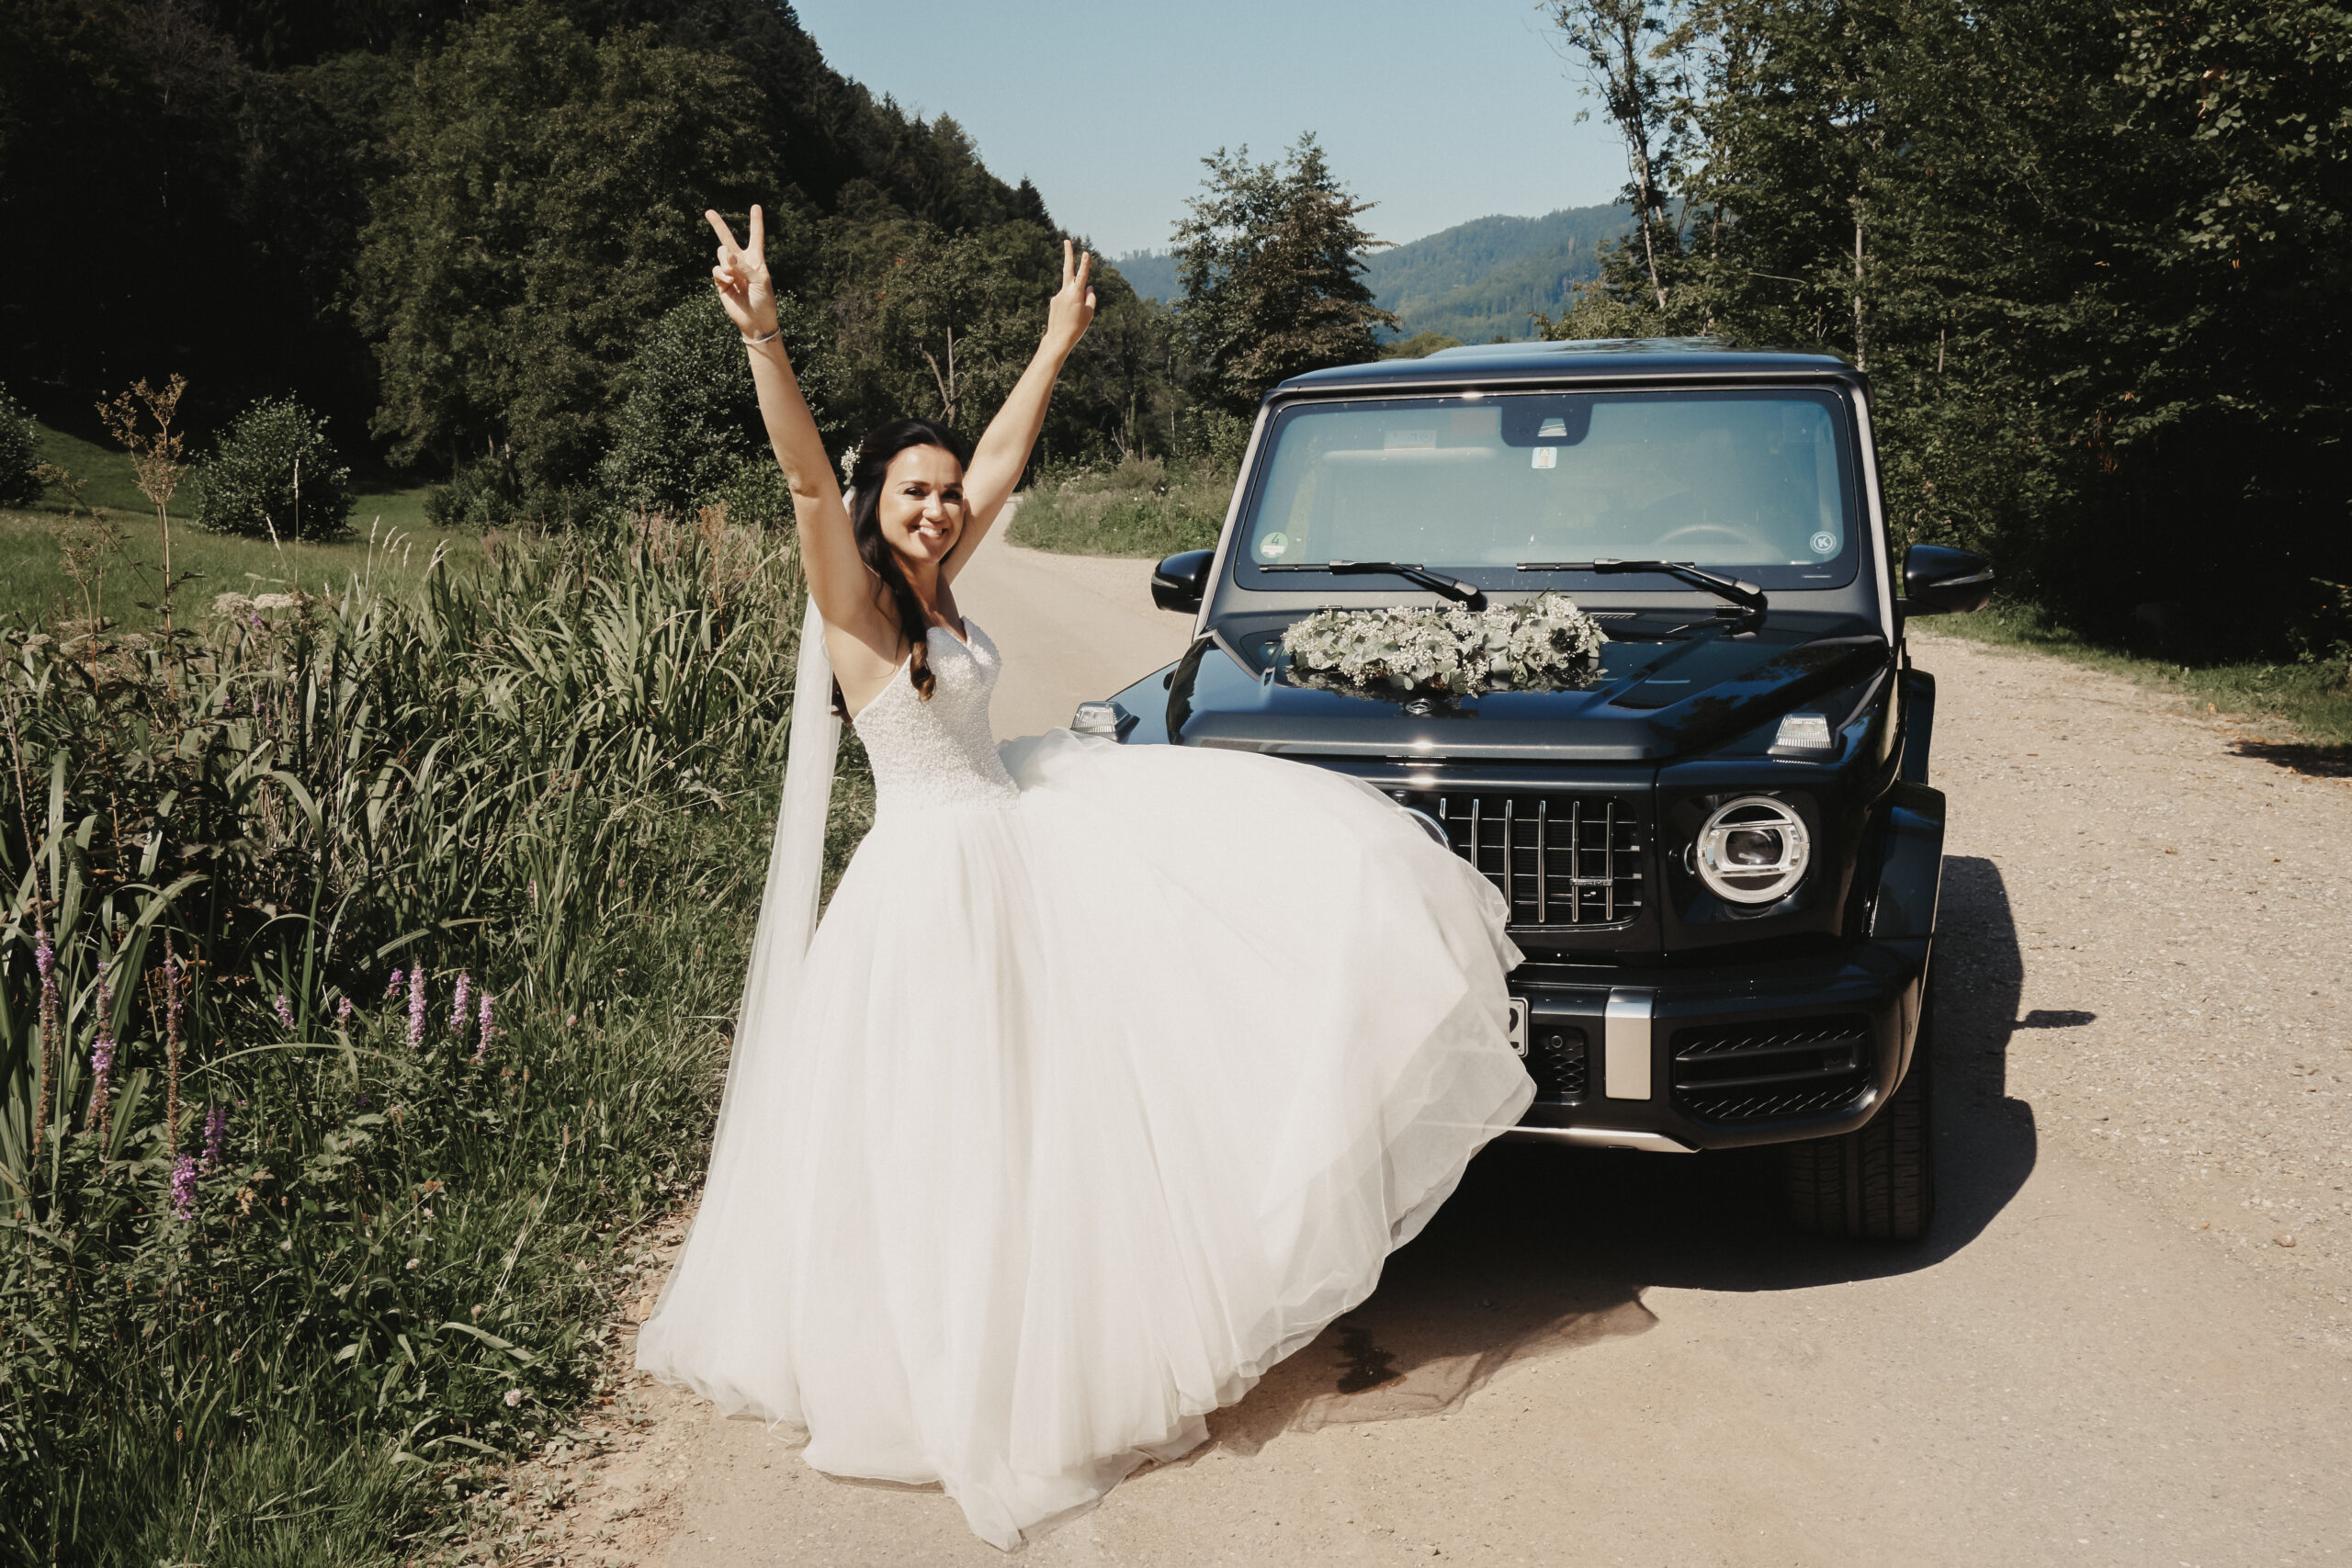 Die Braut post in ihrem großen Brautkleid vor dem Hochzeitsauto. Das Auto ist ein schwarzer Mercedes der in der Natur des Schwarzwalds steht.